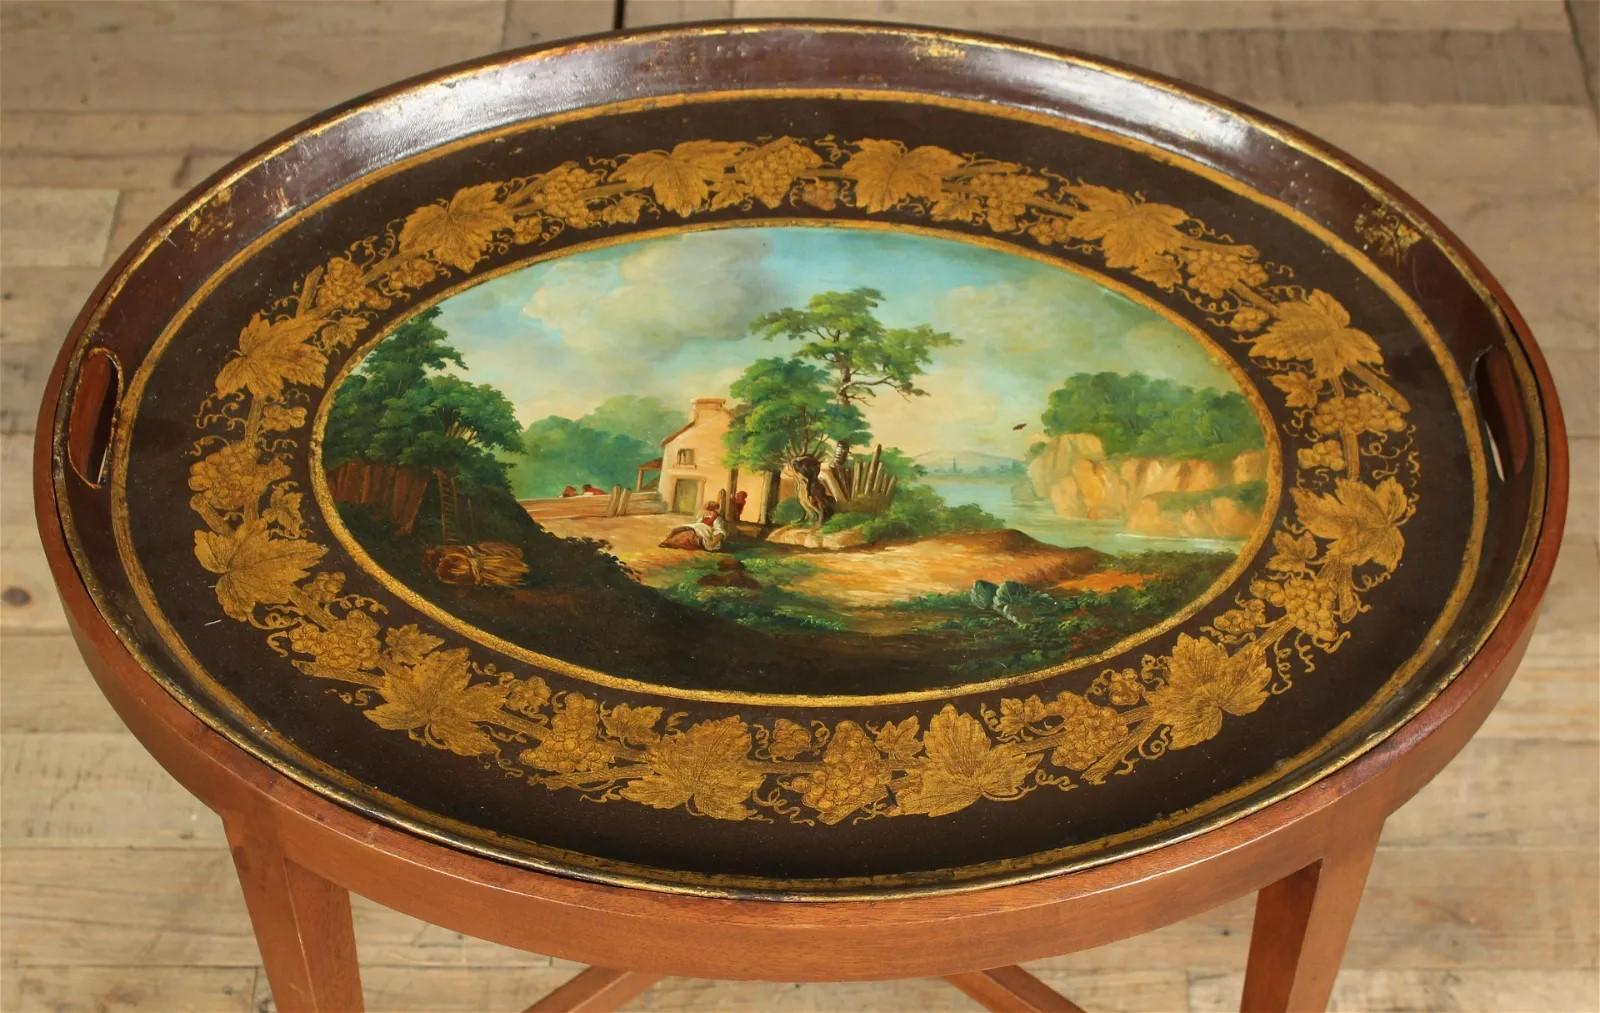 Französisches Zinntablett aus dem frühen 19. Jahrhundert, bemalt mit einer idyllischen Szene in neoklassizistischer Manier, um 1800. Das Tablett wurde auf einen maßgefertigten Obstholzsockel aus späterer Herstellung angefertigt.